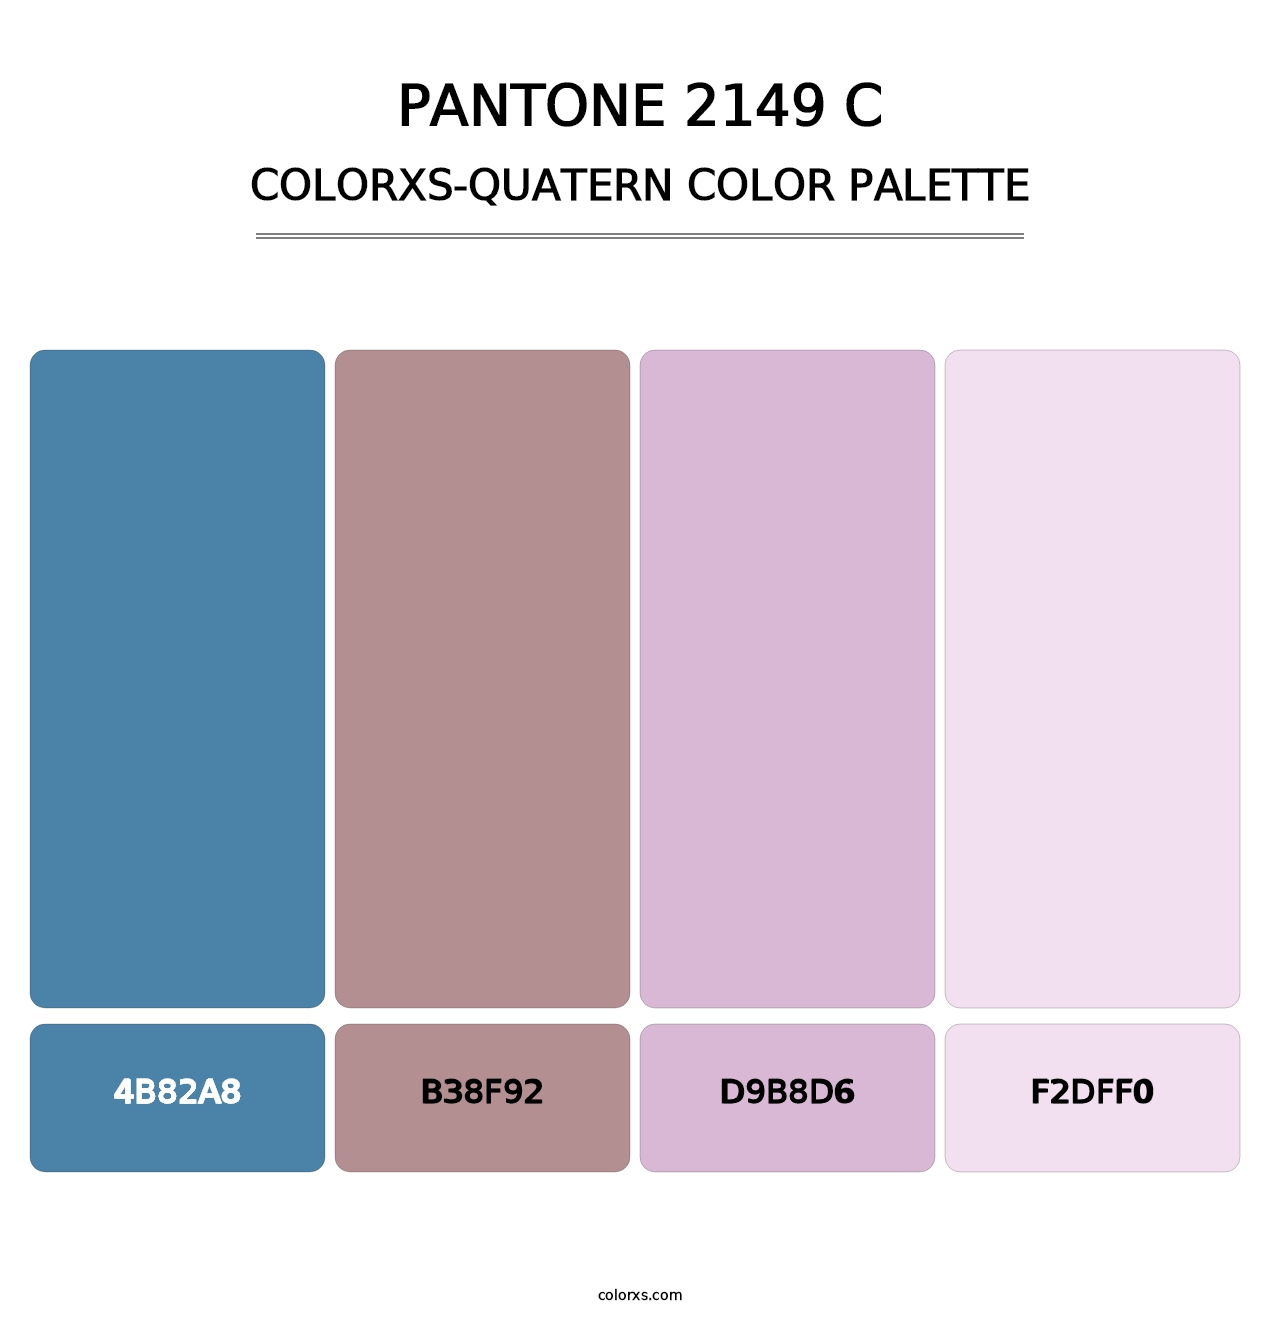 PANTONE 2149 C - Colorxs Quatern Palette